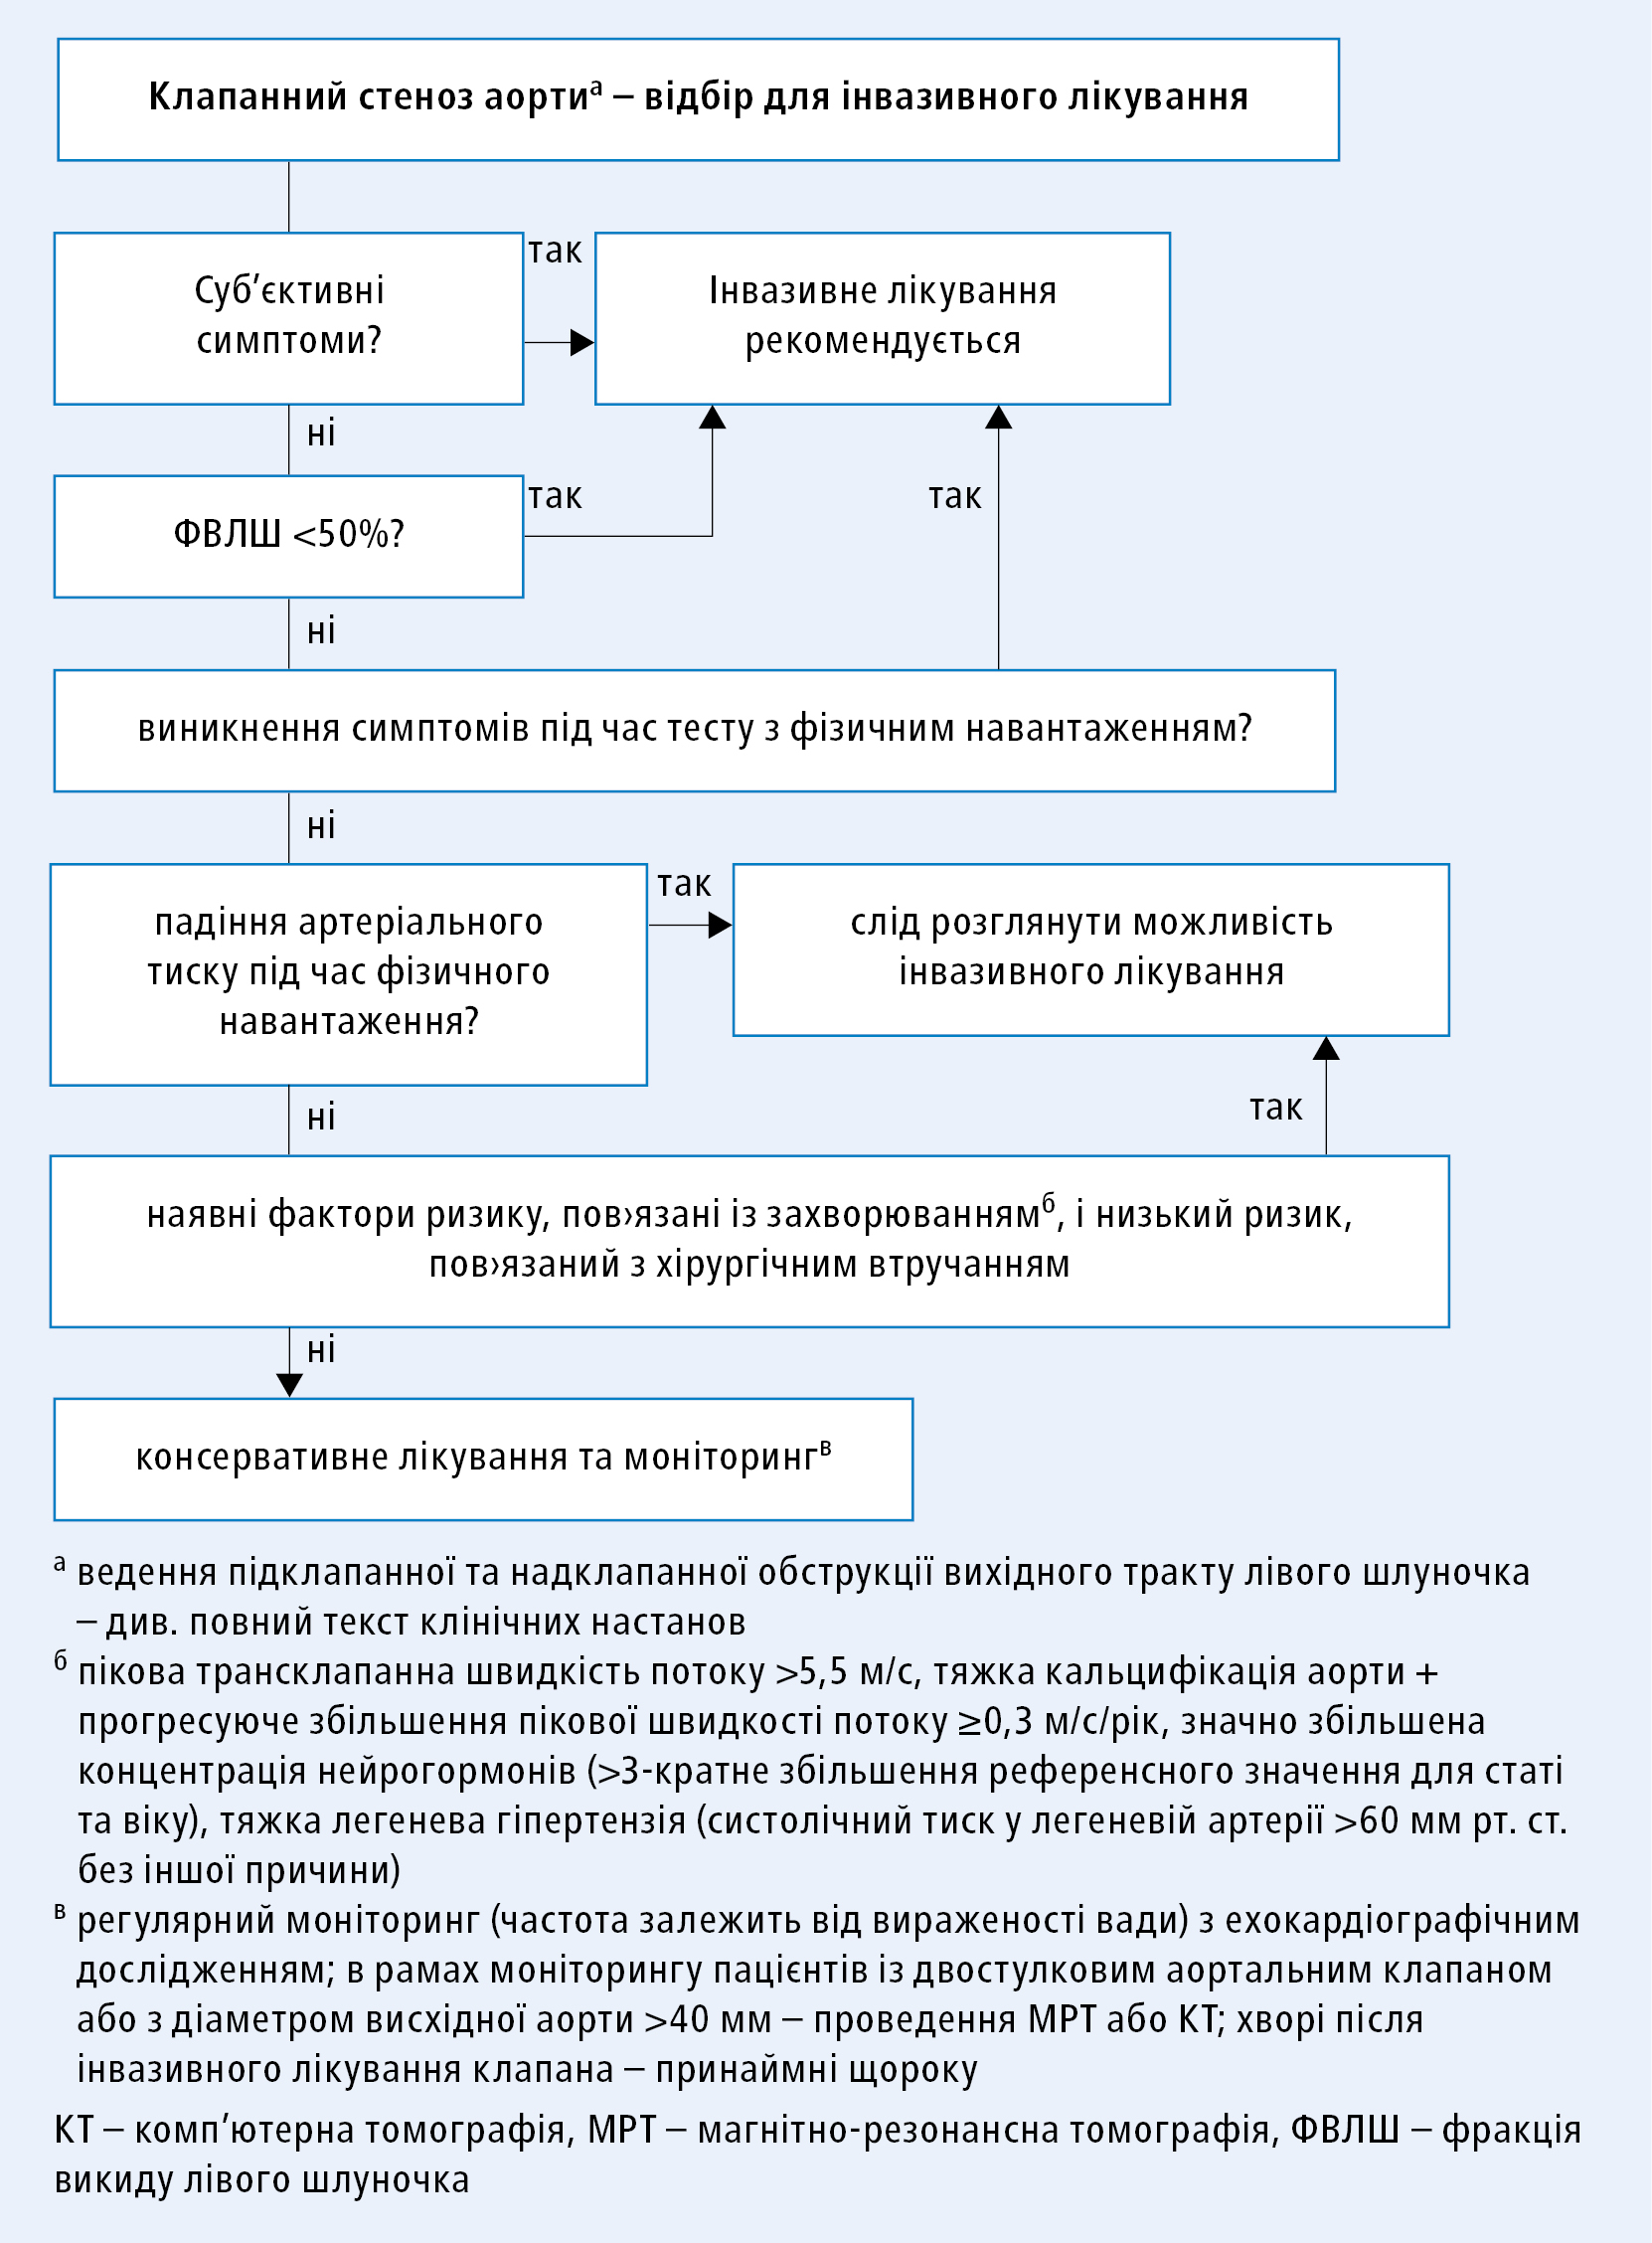 Алгоритм прийняття рішення щодо інвазивного лікування клапанного стенозу аорти (згідно з клінічними настановами ESC 2020, модифіковано)